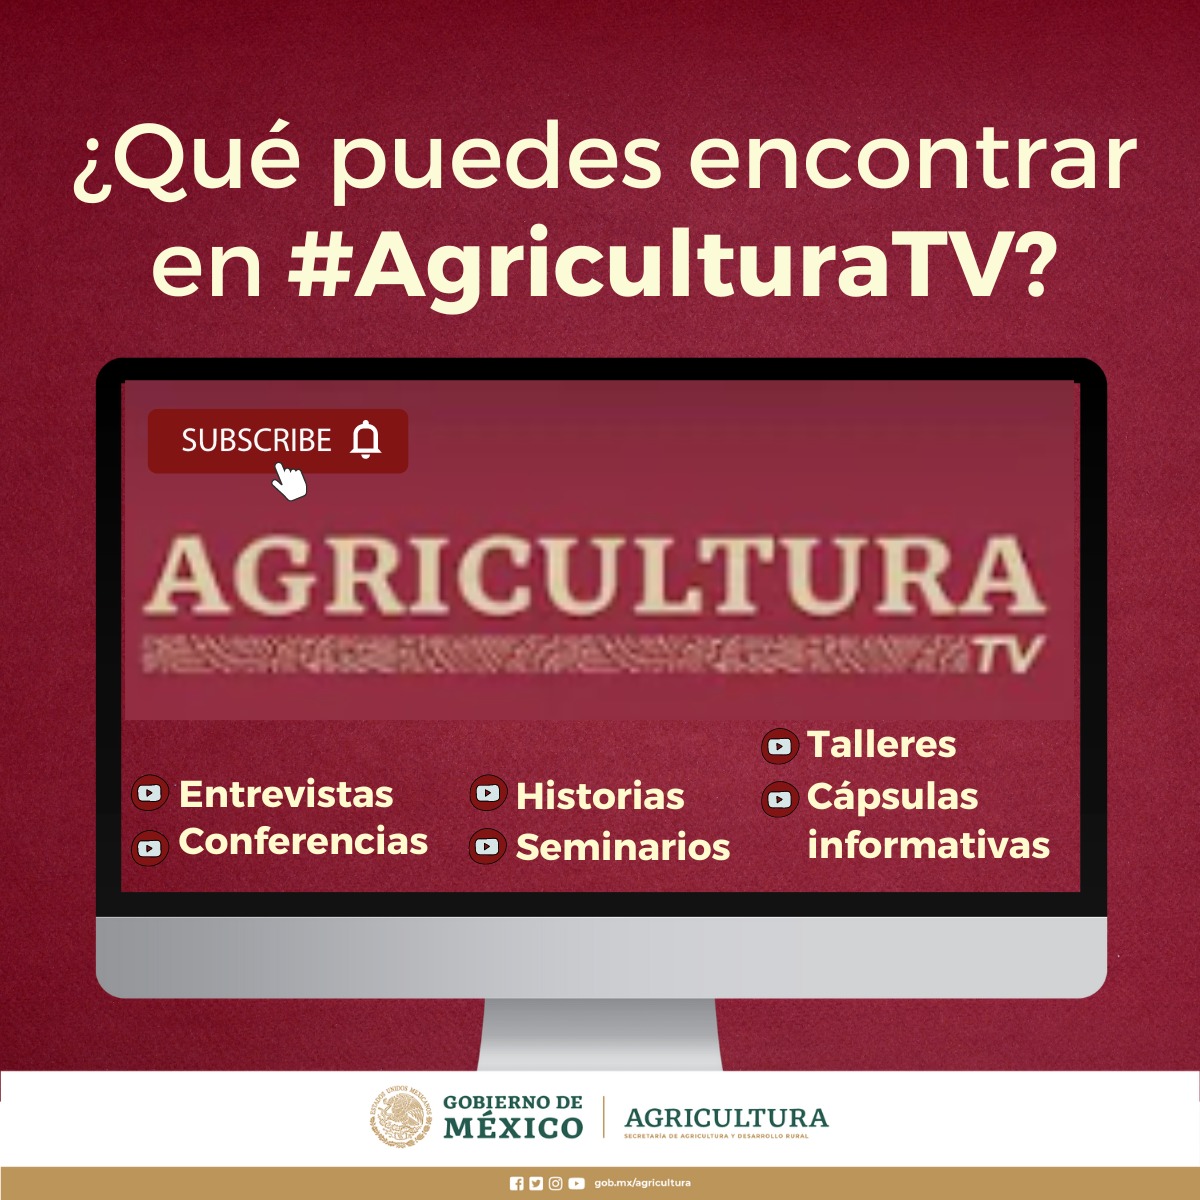 /cms/uploads/image/file/812844/Agricultura_TV.jpg